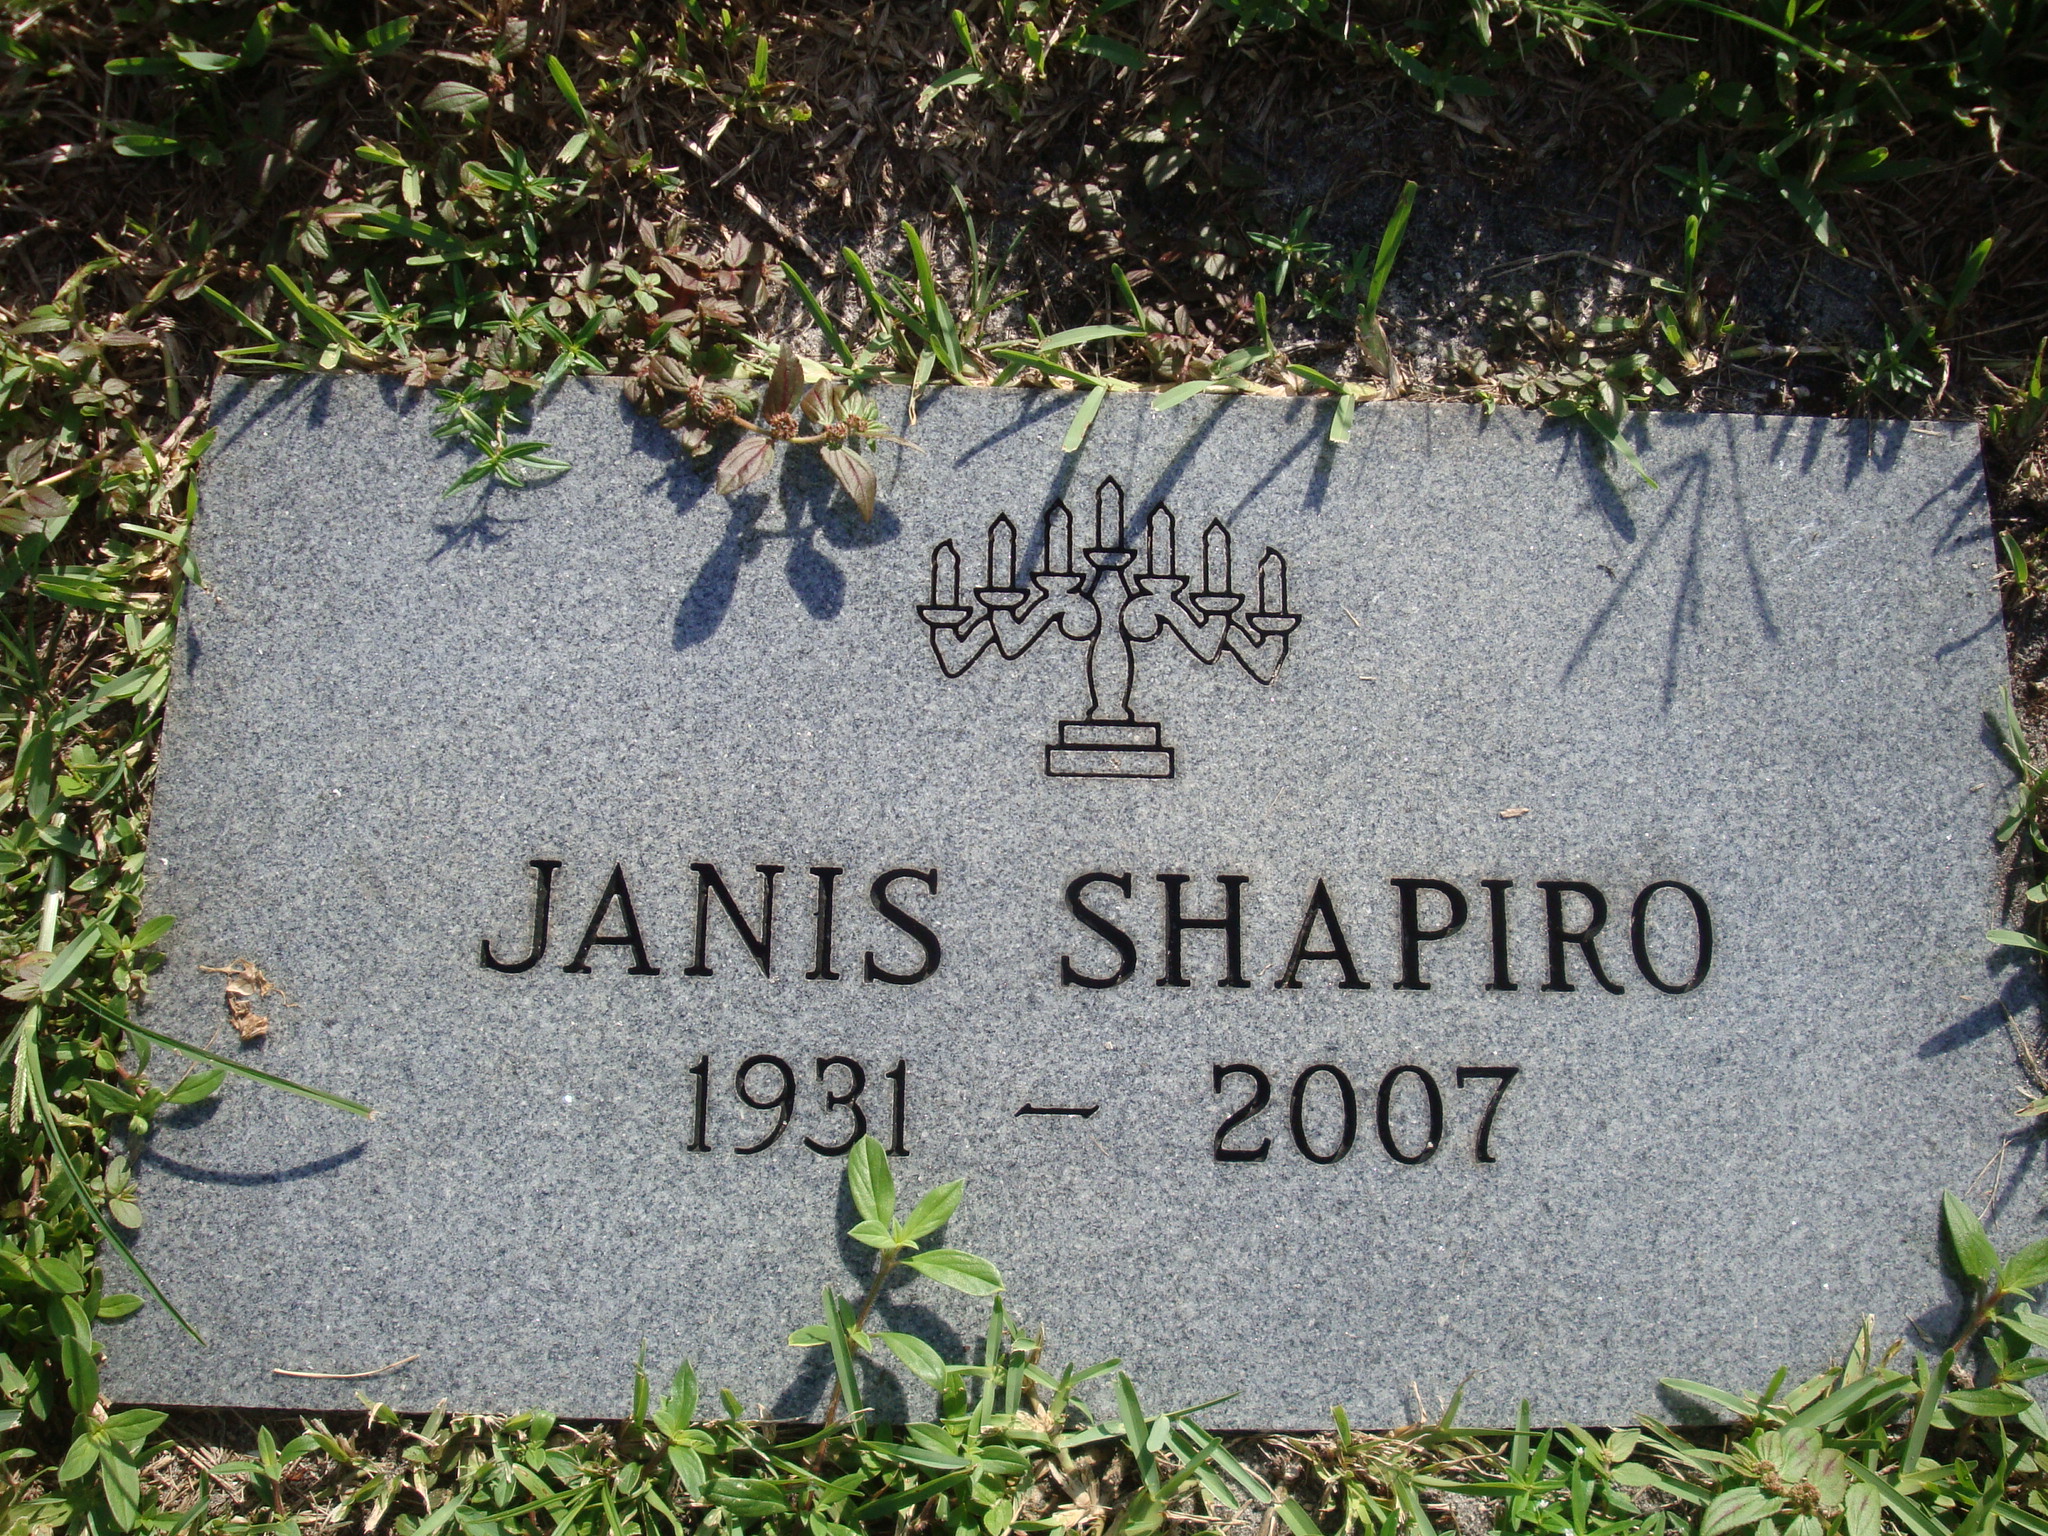 Janis Shapiro